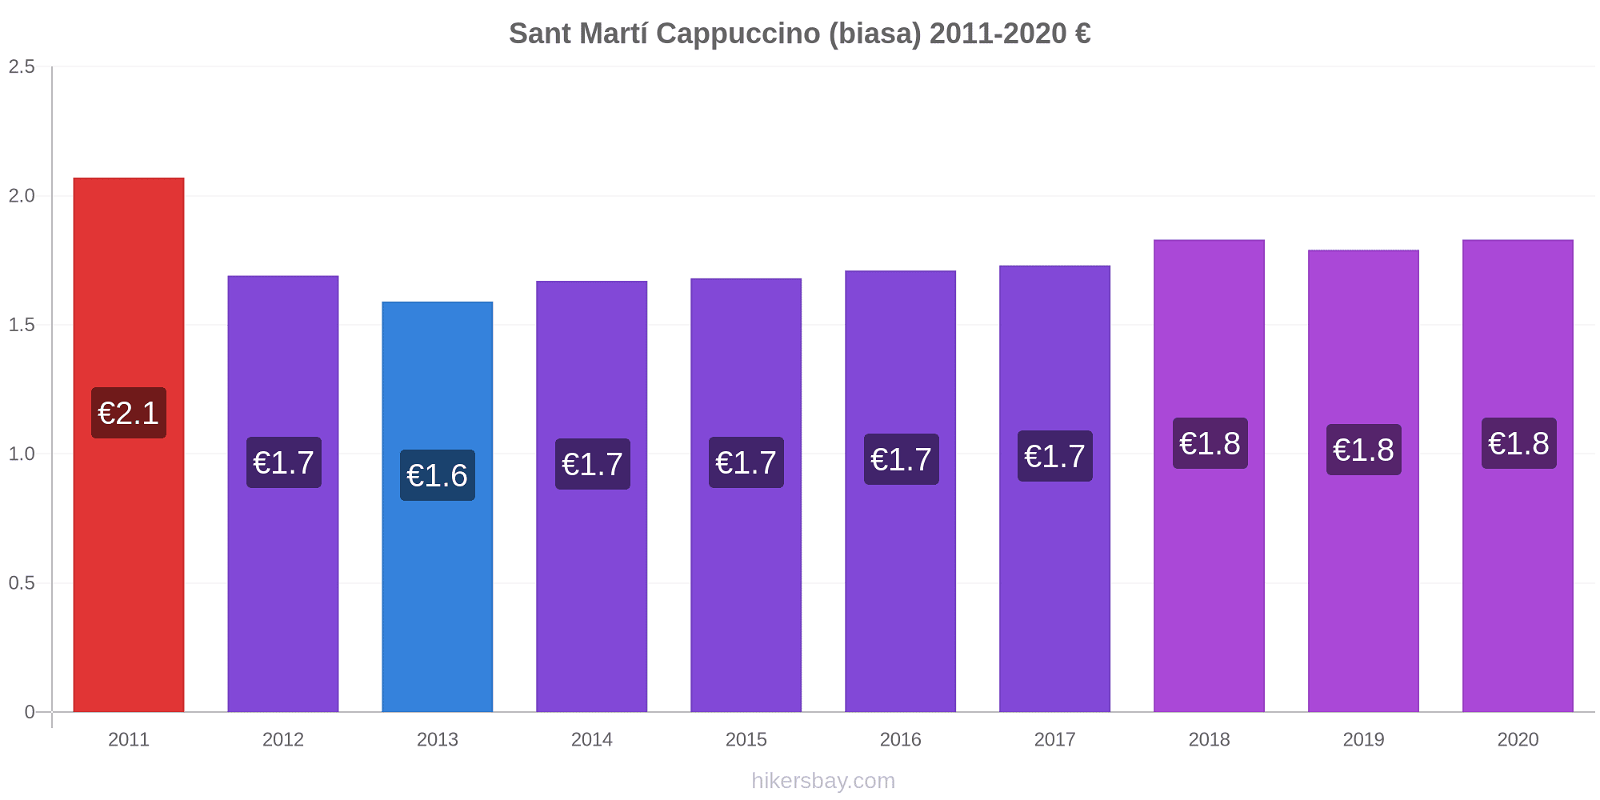 Sant Martí perubahan harga Cappuccino (biasa) hikersbay.com